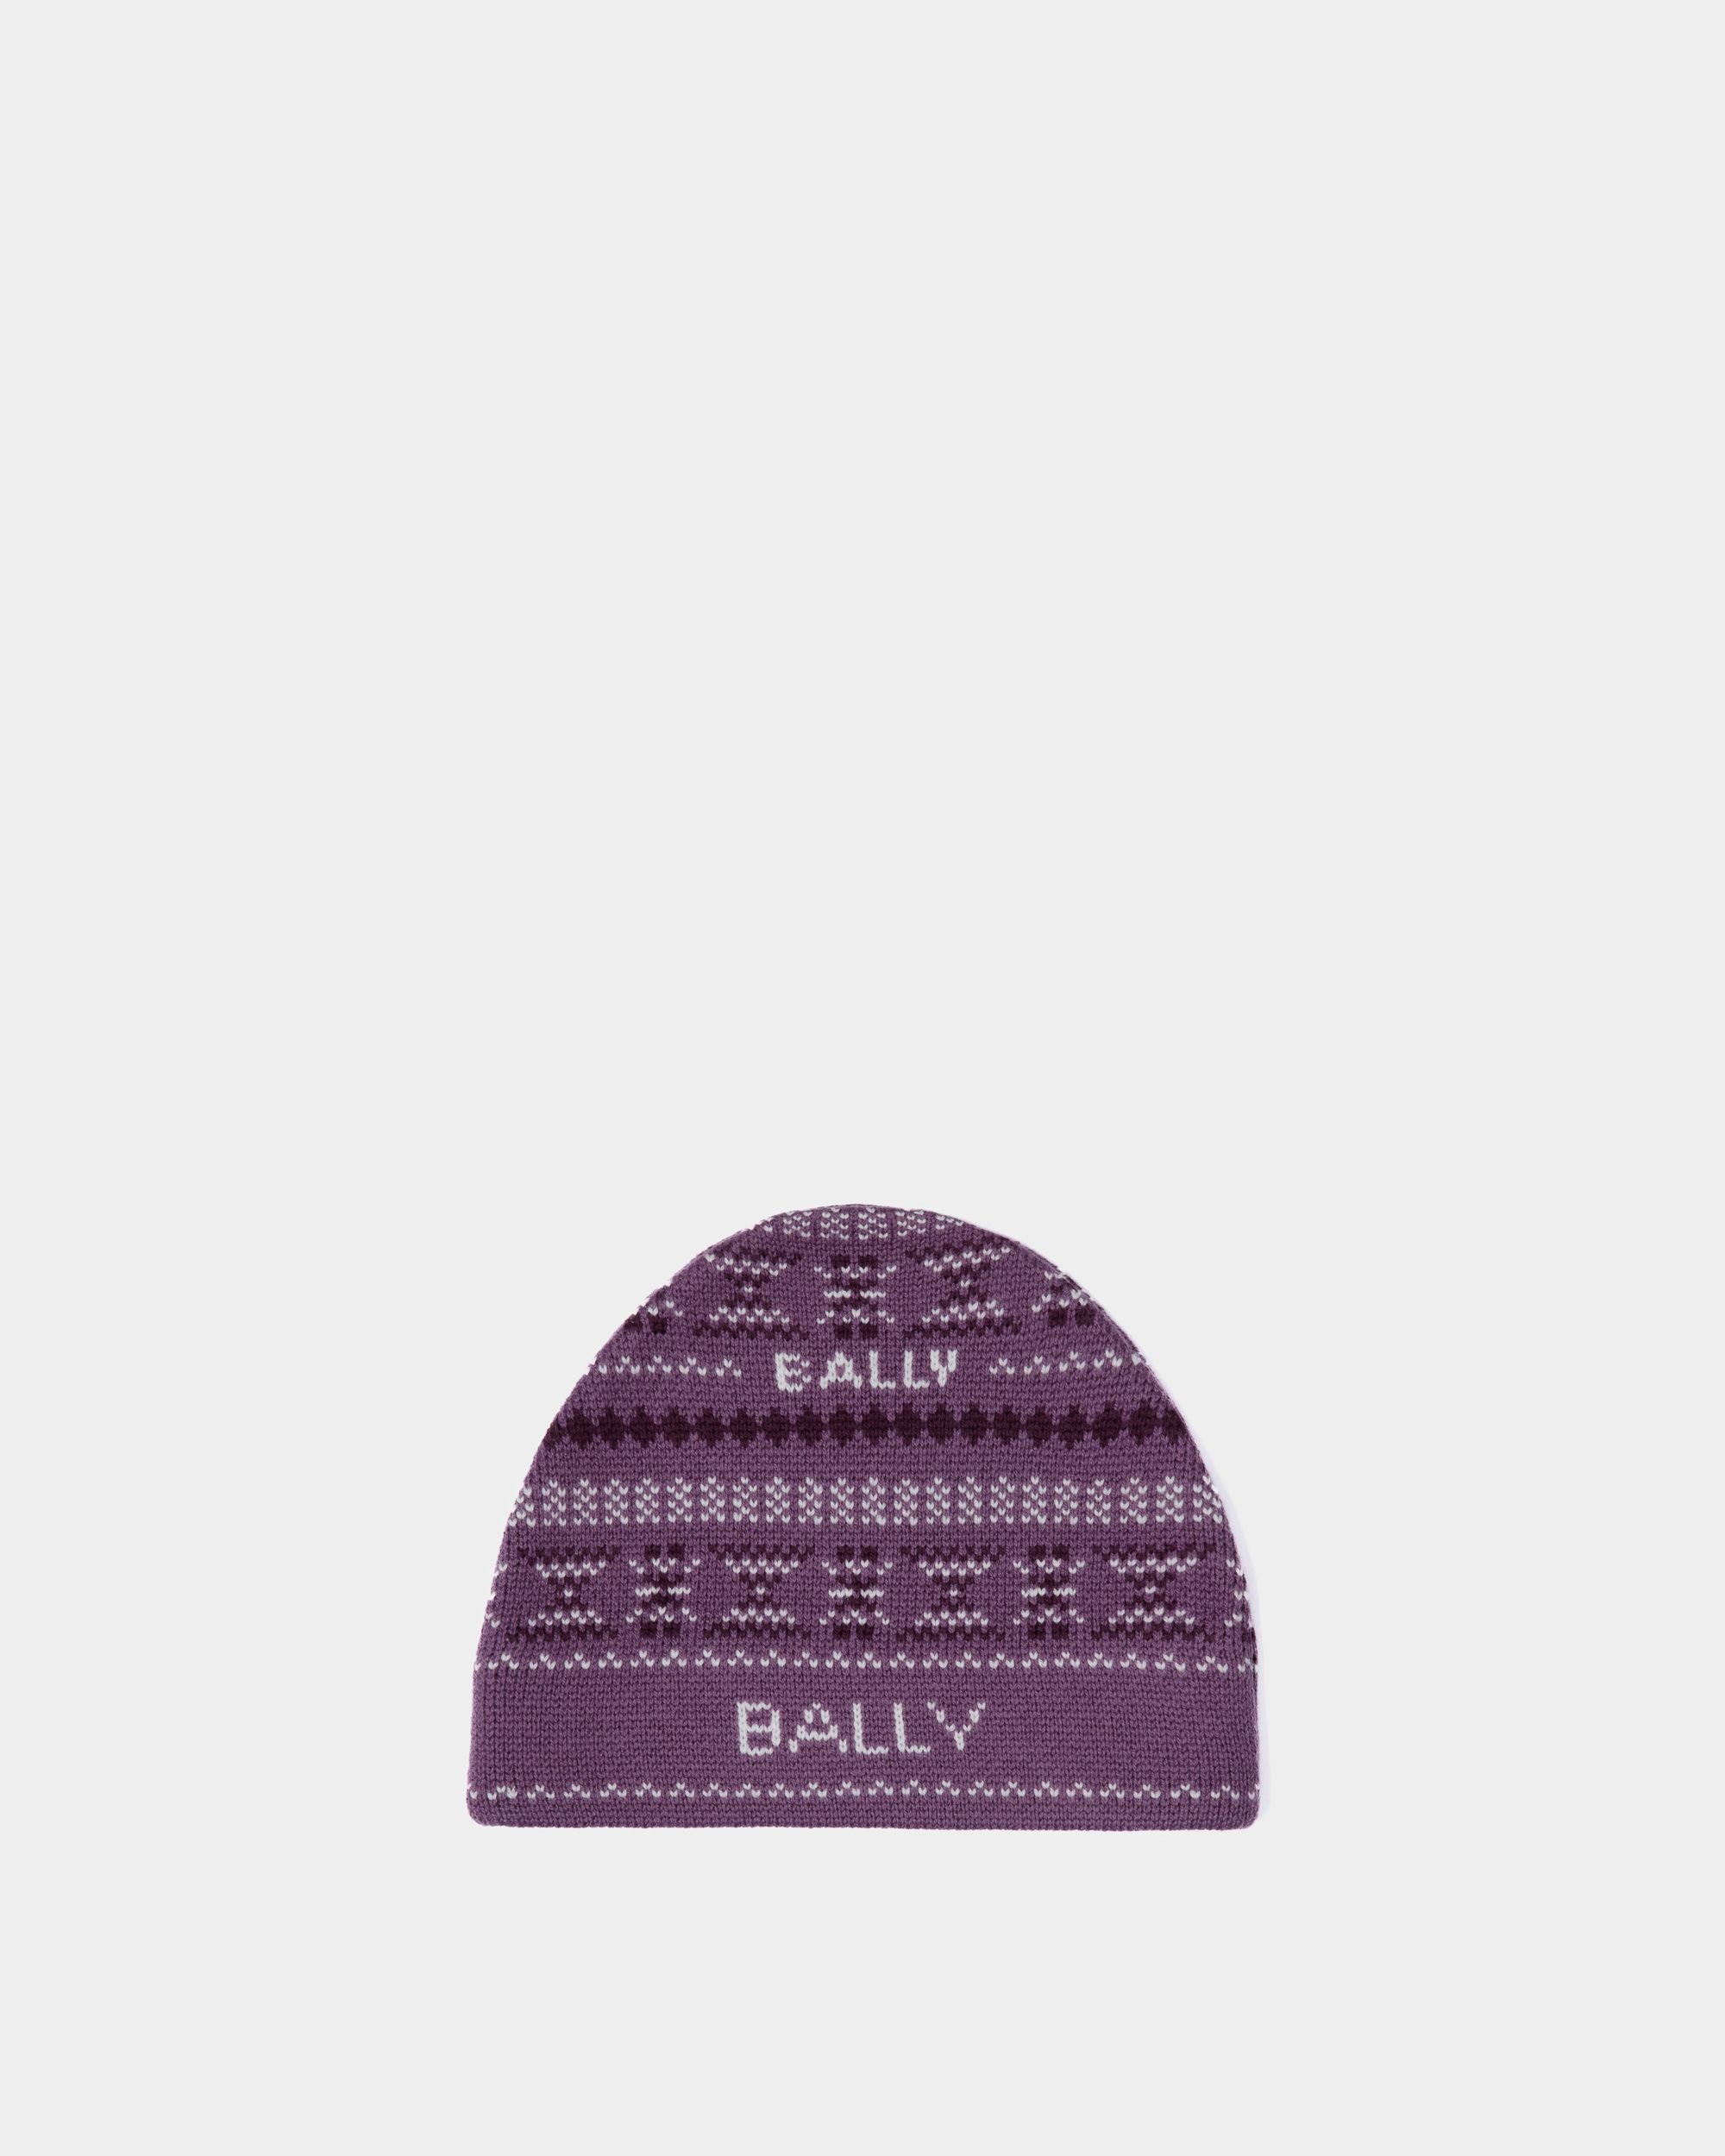 Beanie-Mütze für Damen aus lila Wolle | Bally | Still Life Vorderseite